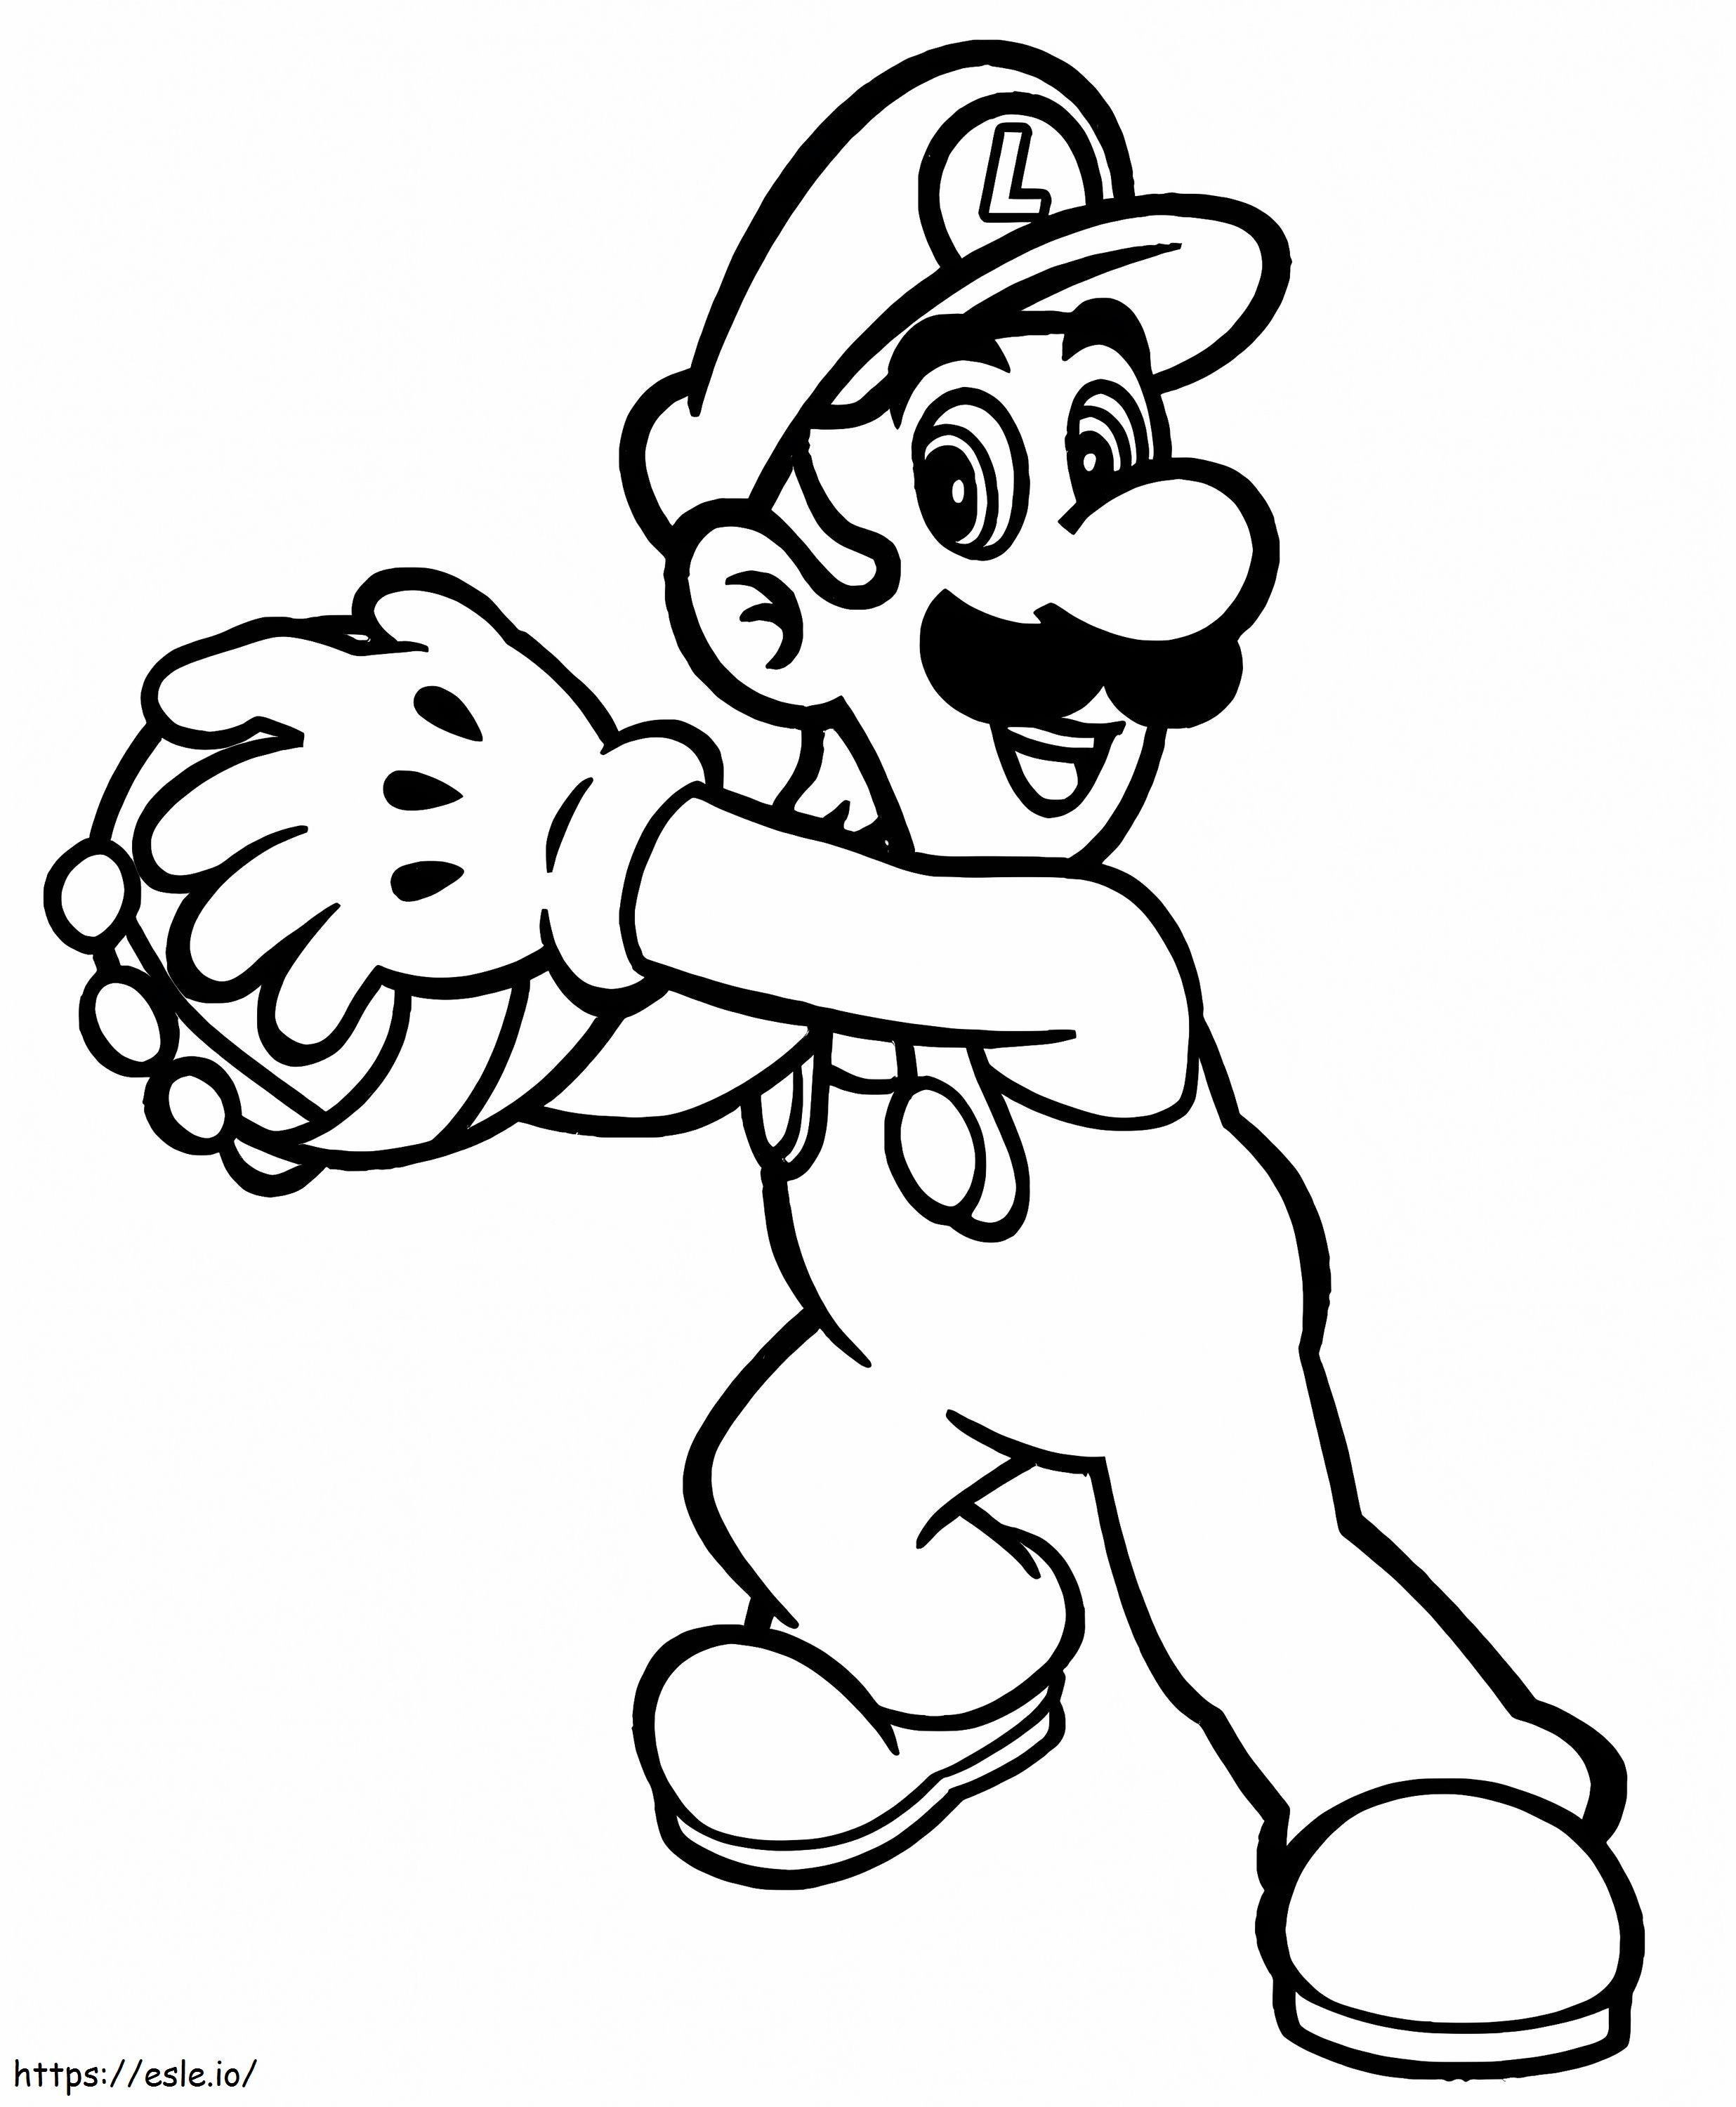 Louis De Super Mario 6 coloring page